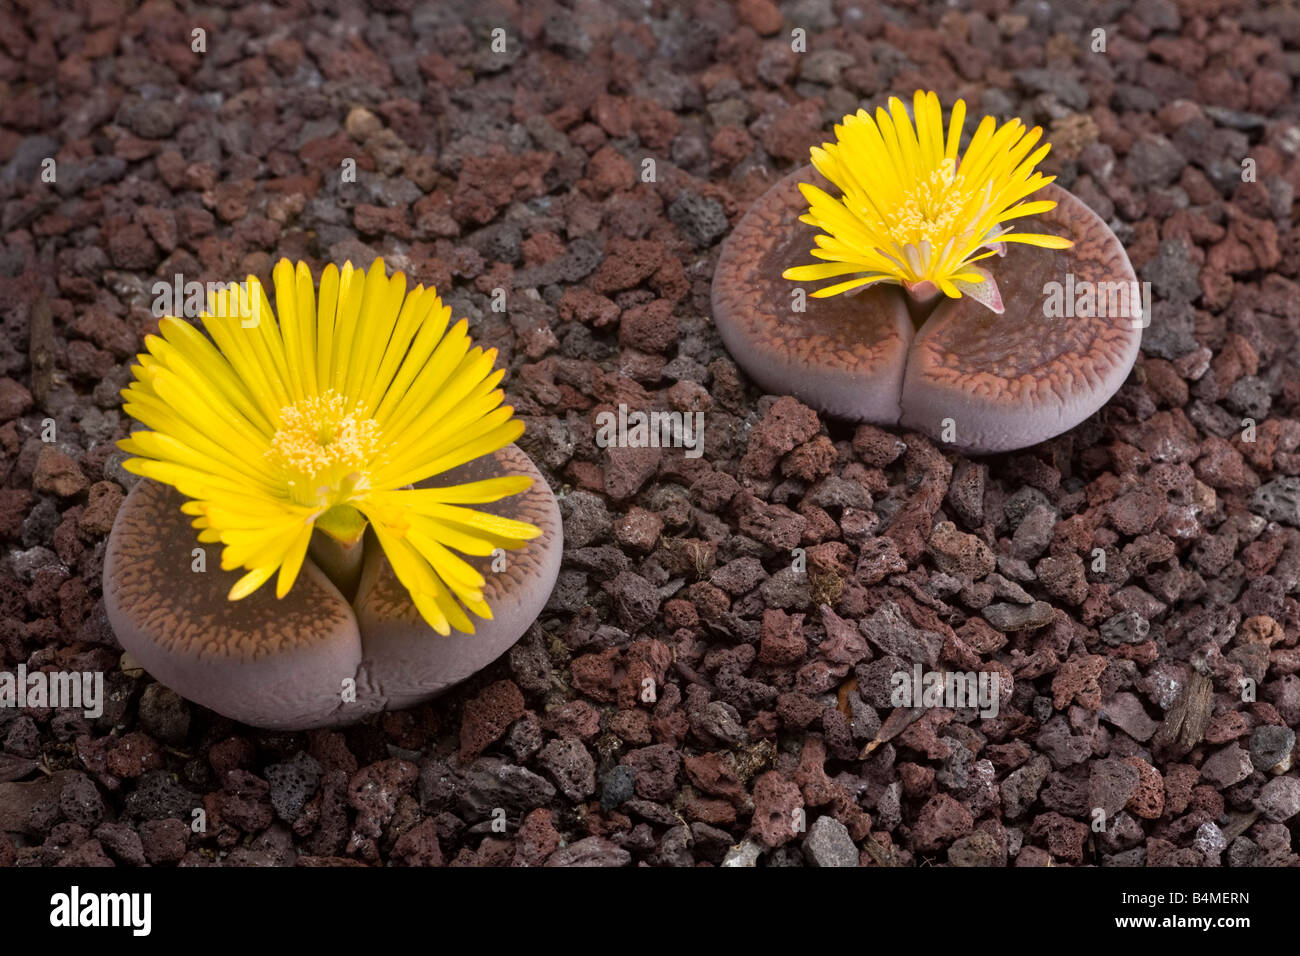 Flowering stones (Lithops aucampiae). Plantes caillou (Lithops aucampiae) en fleur. Stock Photo